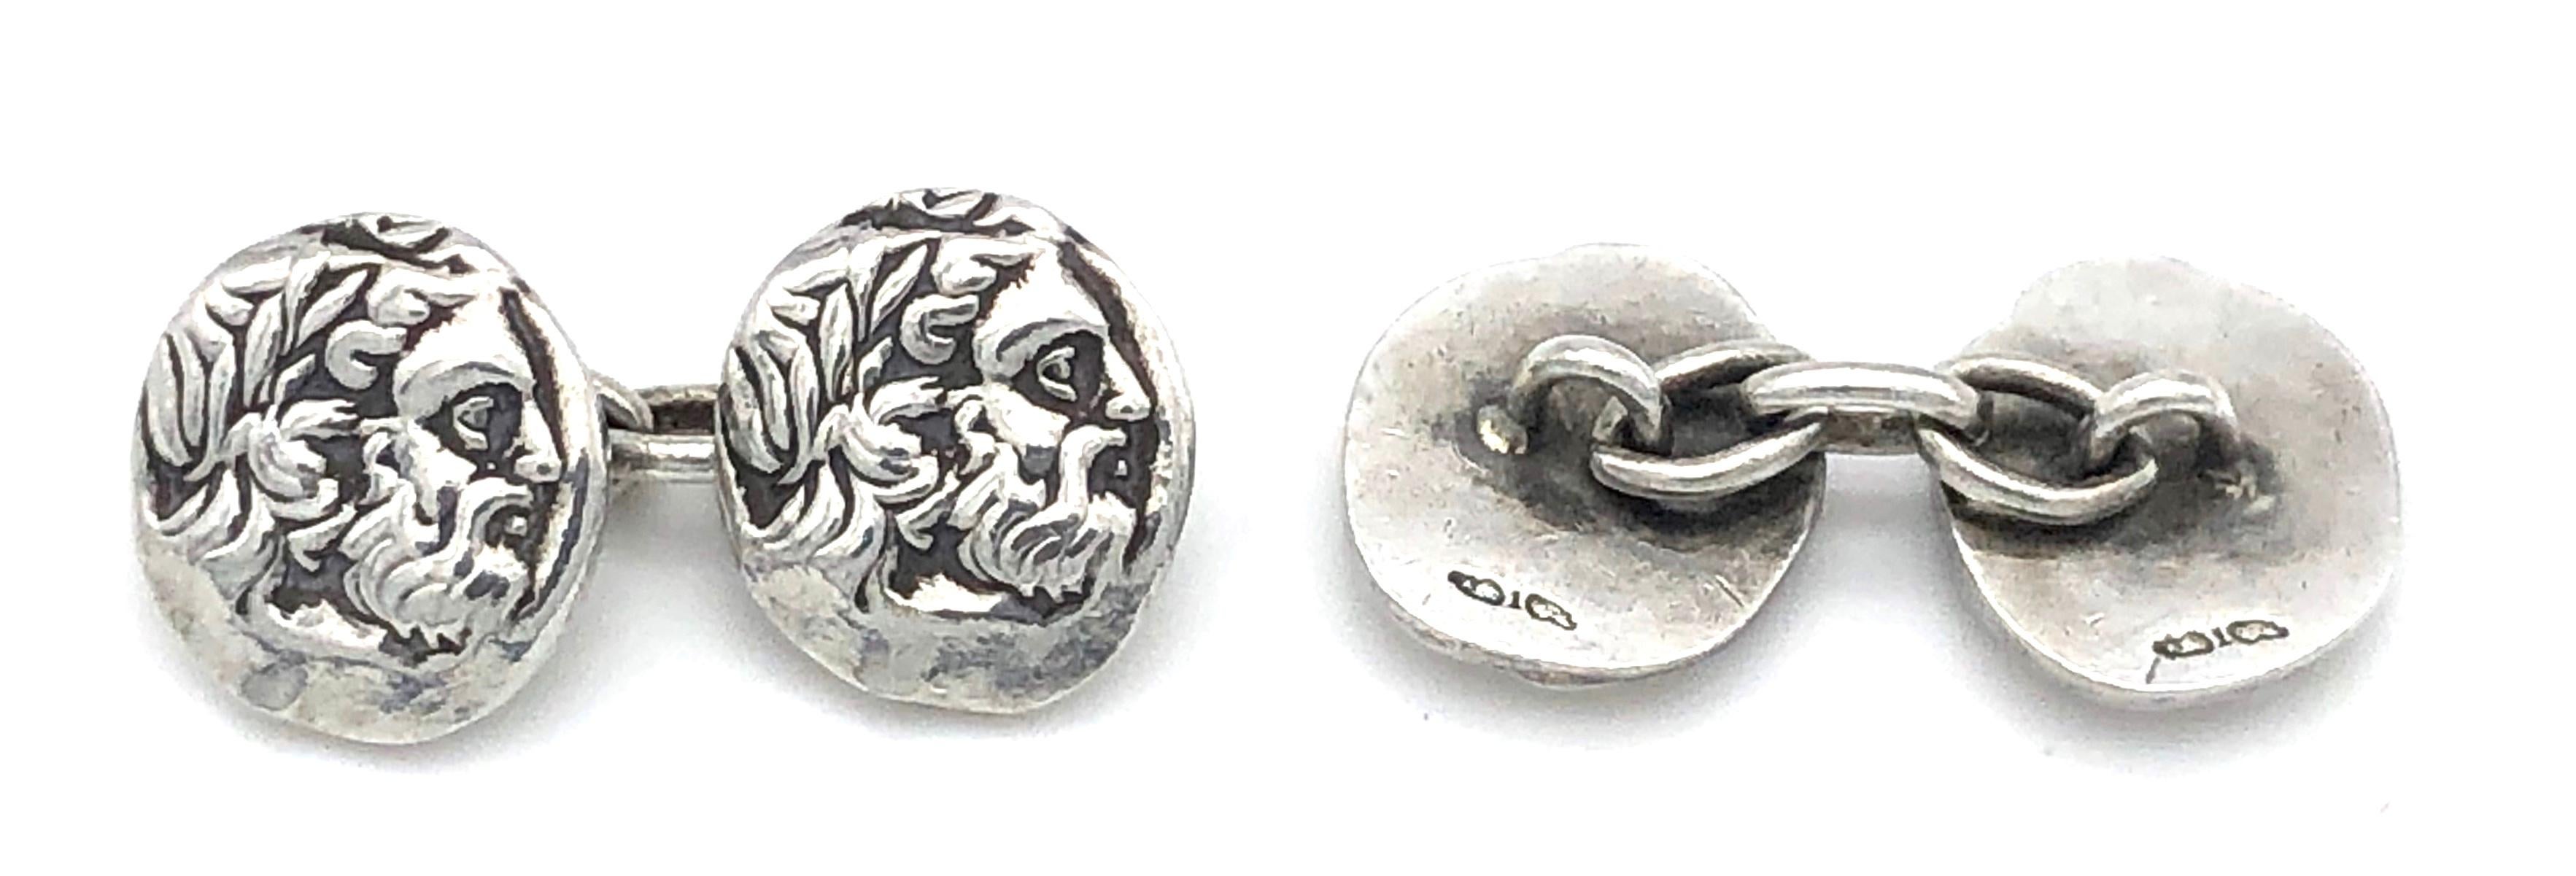 Des moulages de pièces d'argent de l'Antiquité représentant le profil d'un dignitaire barbu portant une couronne de laurier ont été transformés en une paire de boutons de manchette inhabituels.